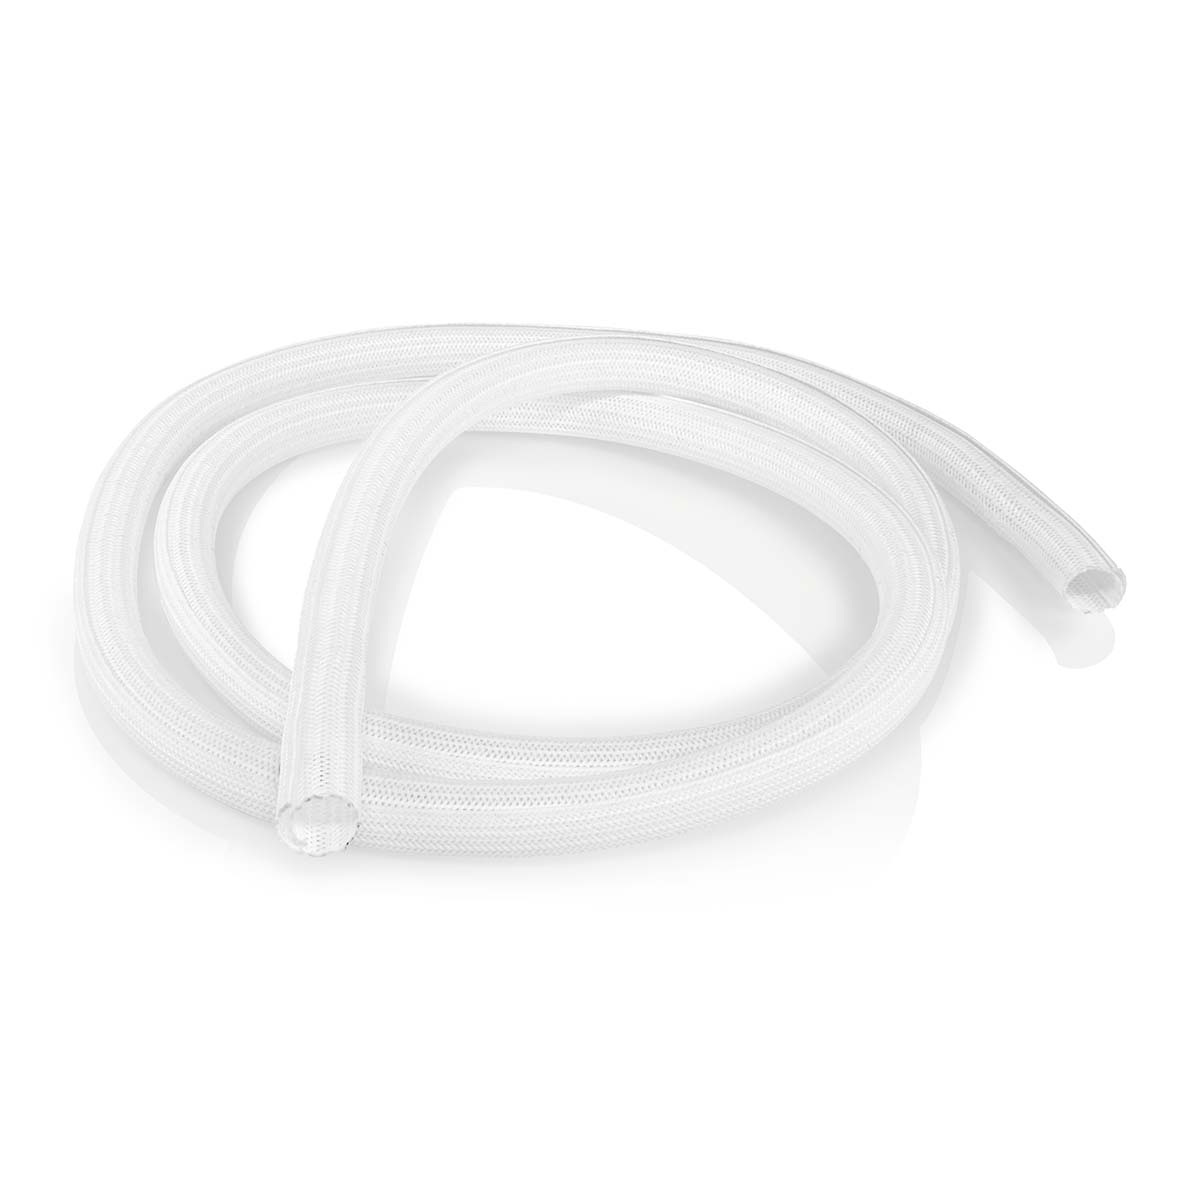 Cable management | Pouzdro | 2.00 m | 1 kusů | Maximální tloušťka kabelu: 15 mm | Nylon | Bílá